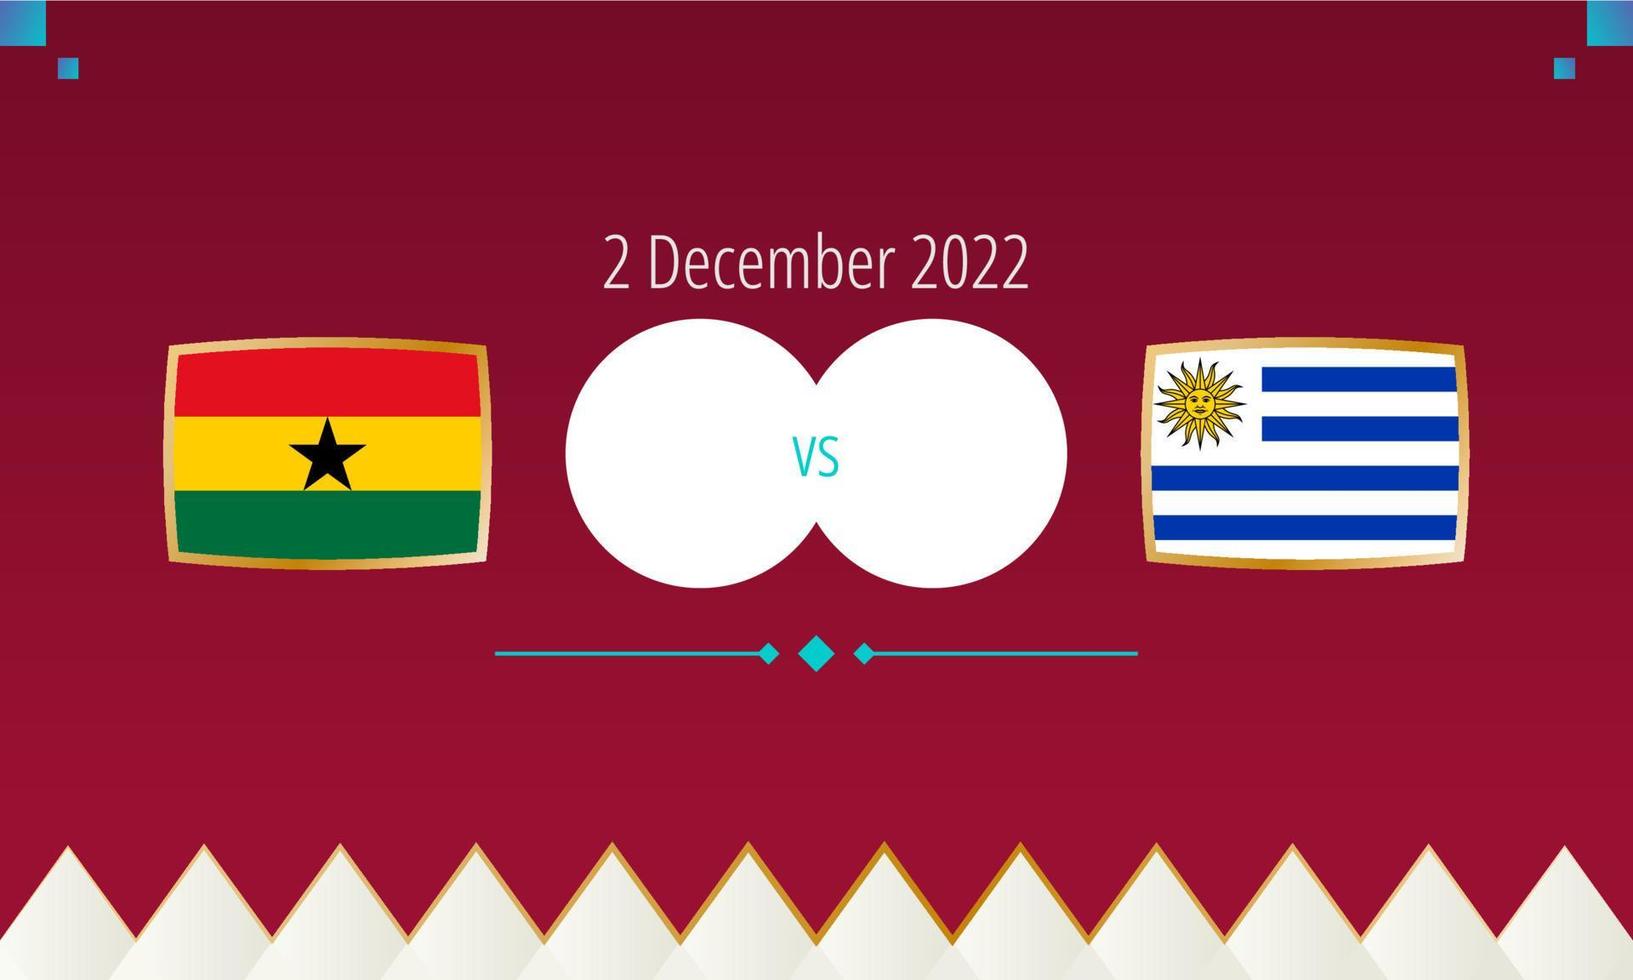 ghana mot uruguay fotboll match, internationell fotboll konkurrens 2022. vektor